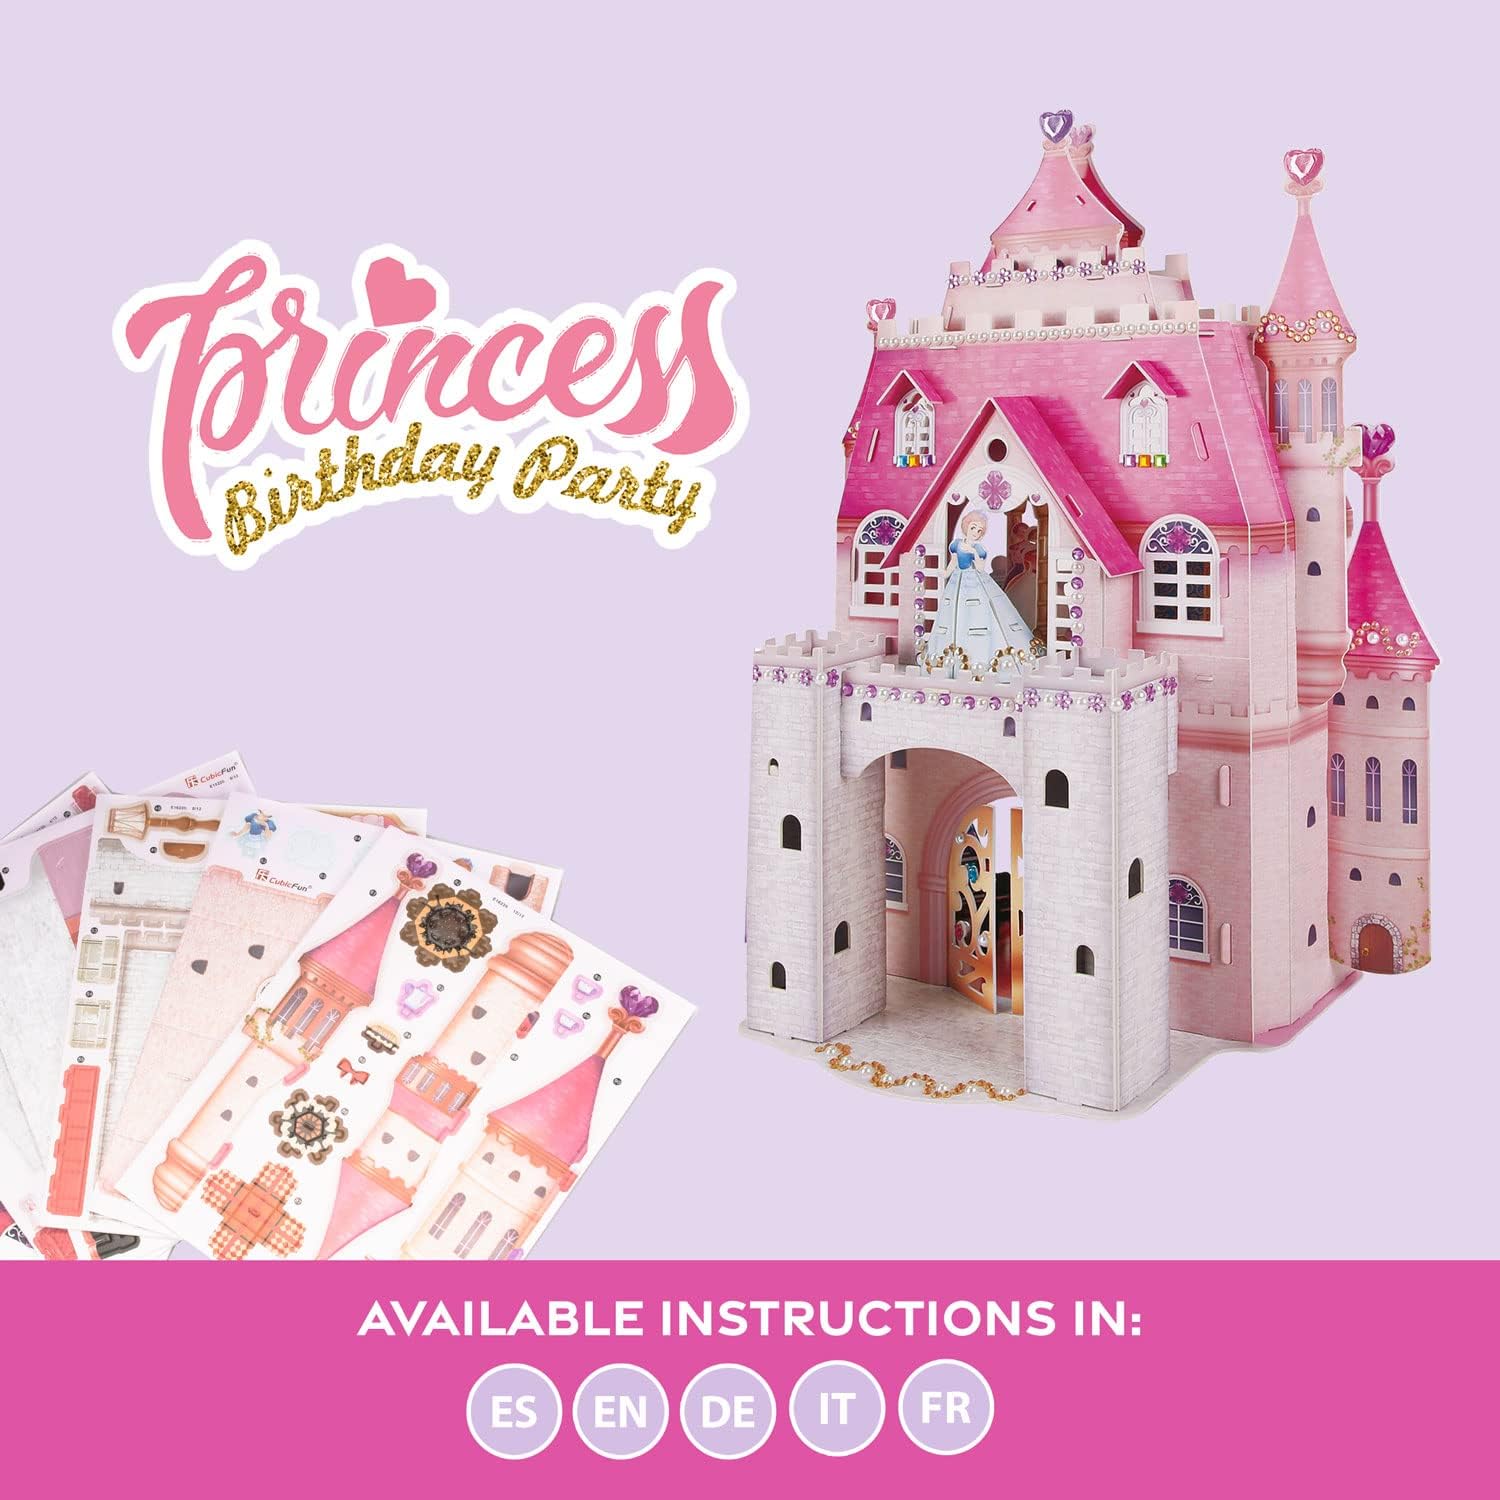 3D Puzzle Children - Princess Birthday Party , Princess Castle 95 Pieces